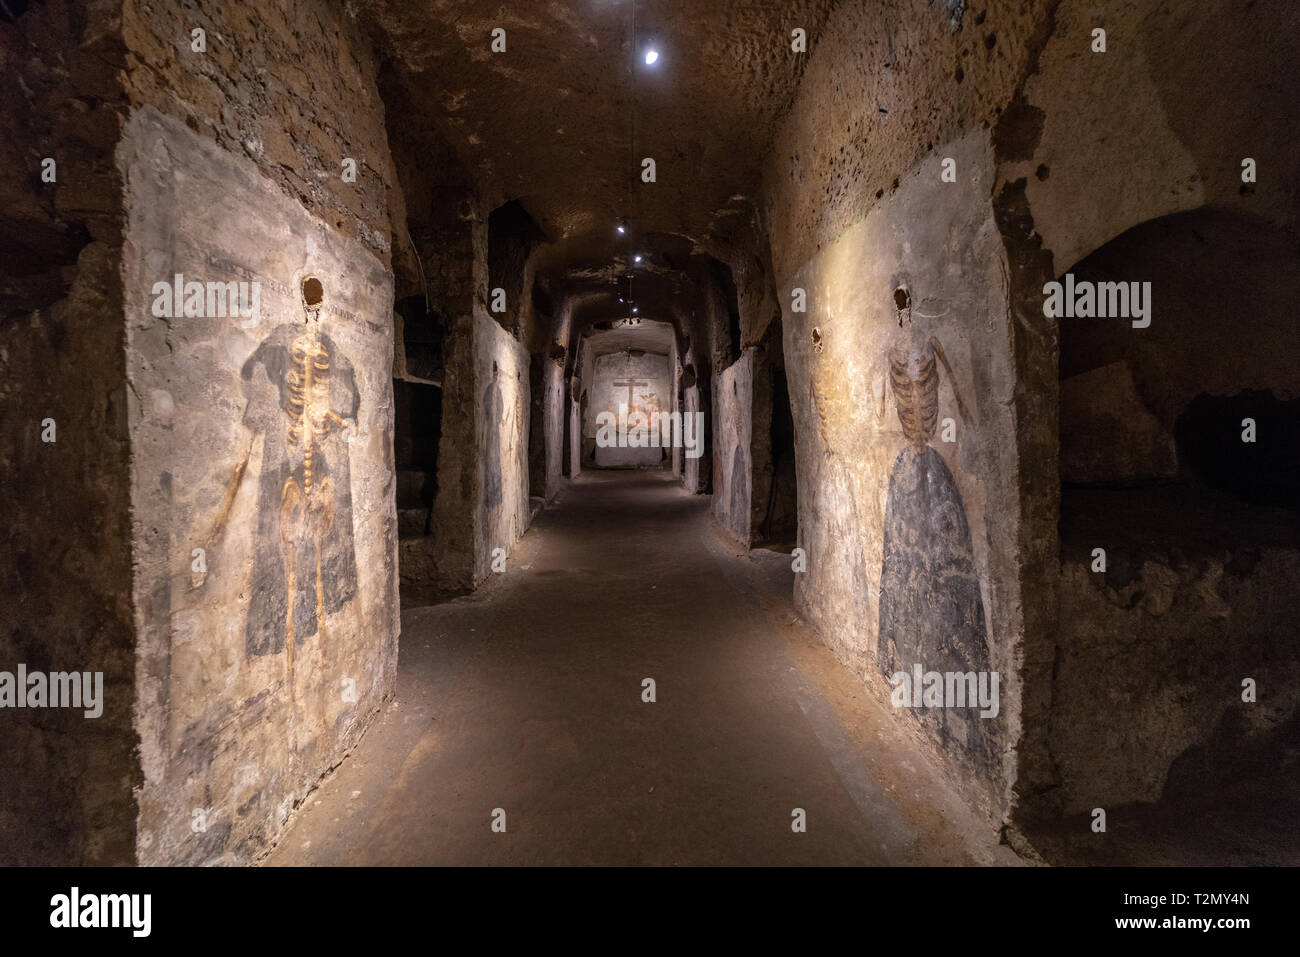 Affreschi nelle catacombe di San Gaudioso, Napoli. Corridoio dei Morti Stock Photo